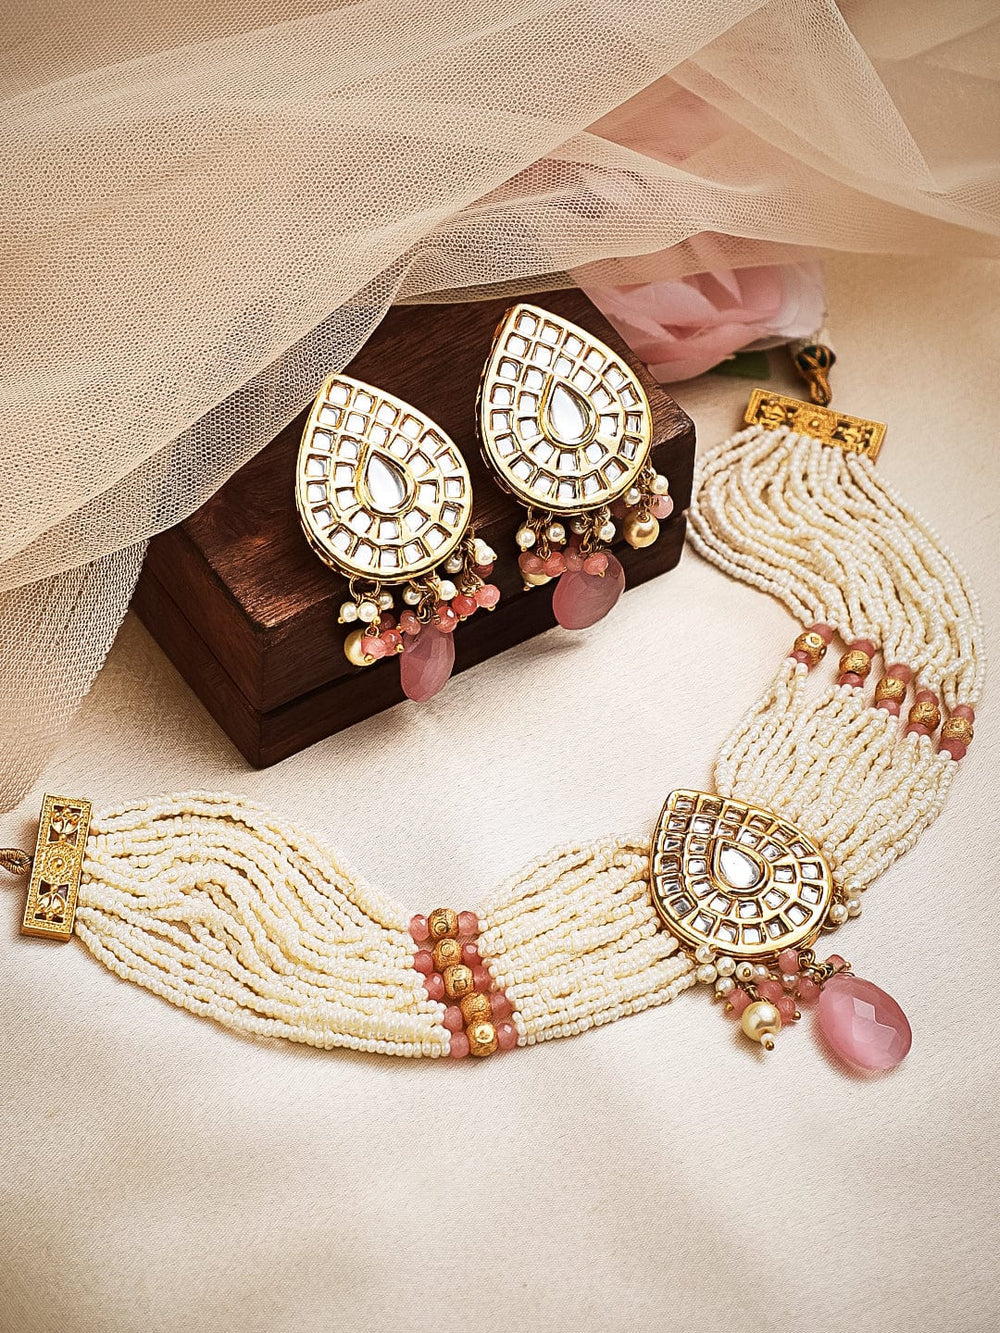 Rubans Luxury Gold Plated Kundan Choker Set With Pastel Pink Beads. Necklace Set